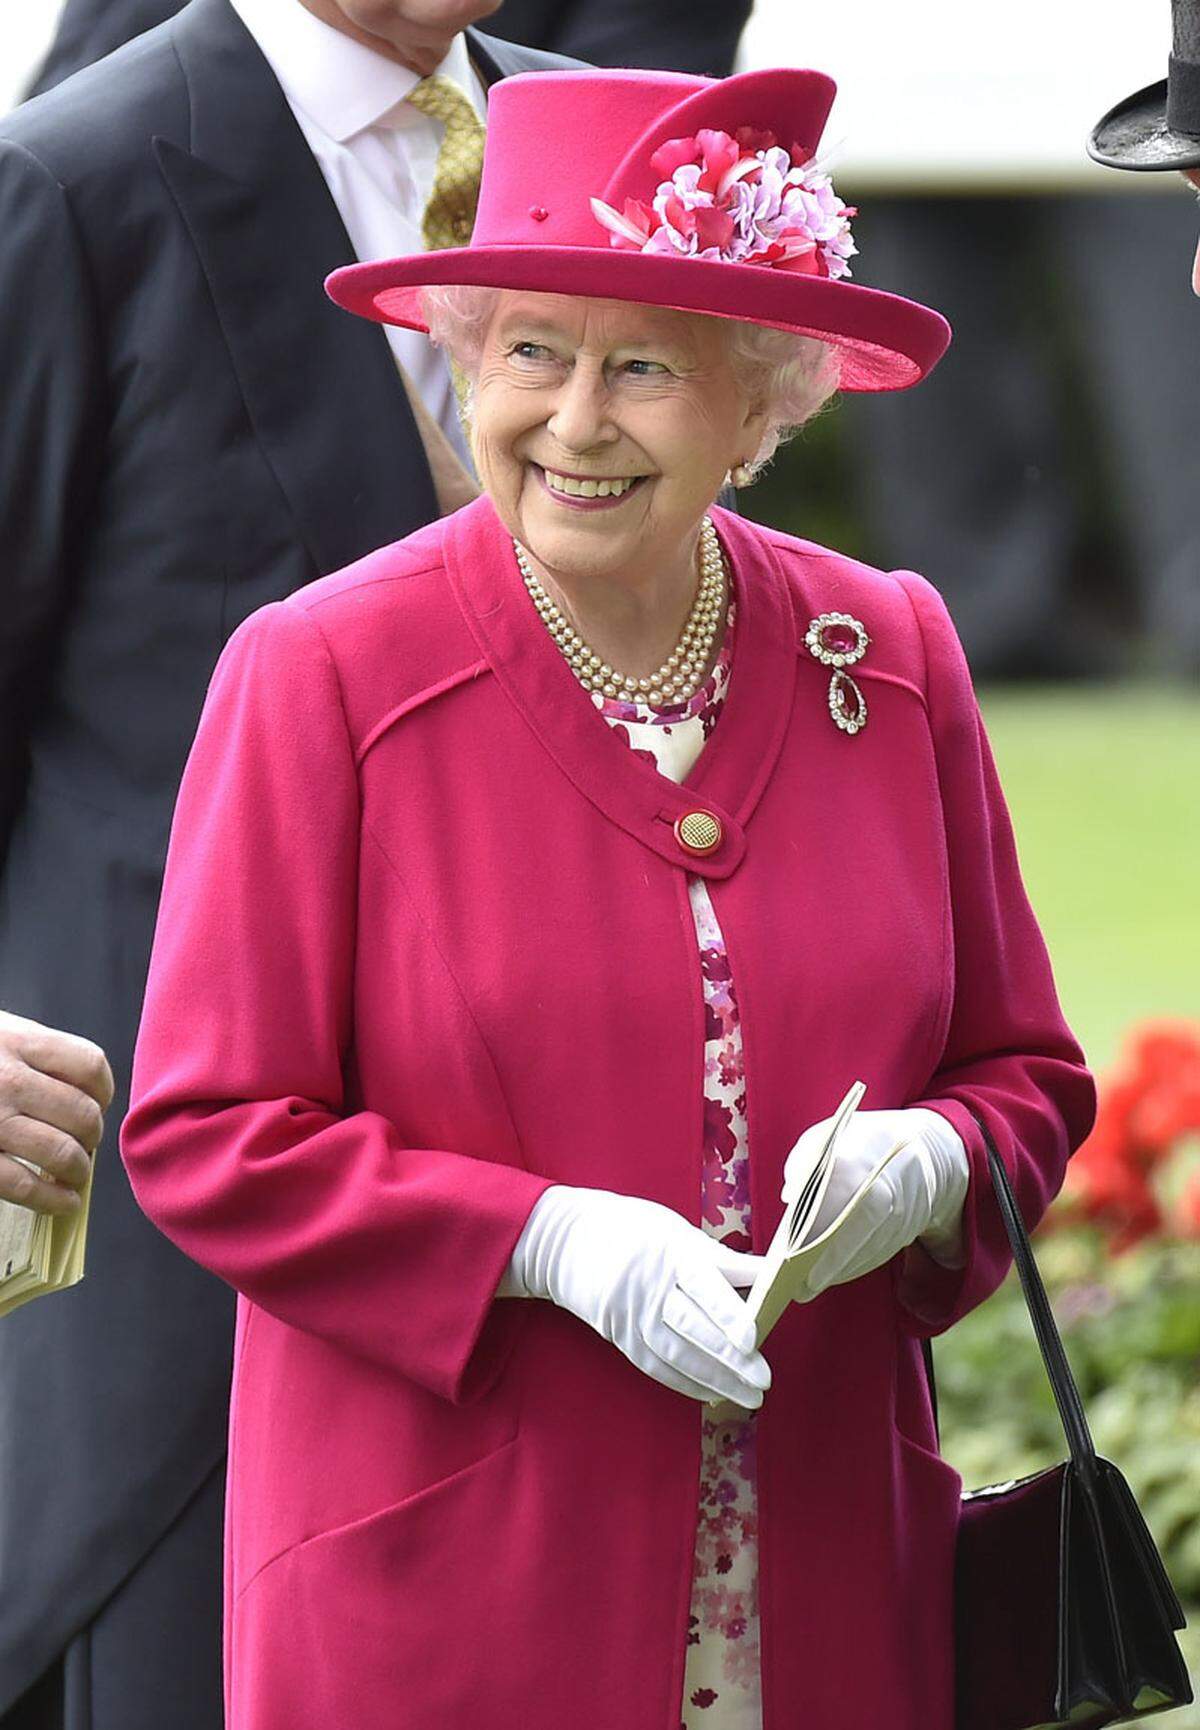 Gut behütet geht es wie jedes Jahr bei dem traditionellen Royal Ascot Pferderennen zu. Queen Elizabeth II war natürlich mit von der Partie. Sie zeigte sich gut gelaunt ganz in Pink.